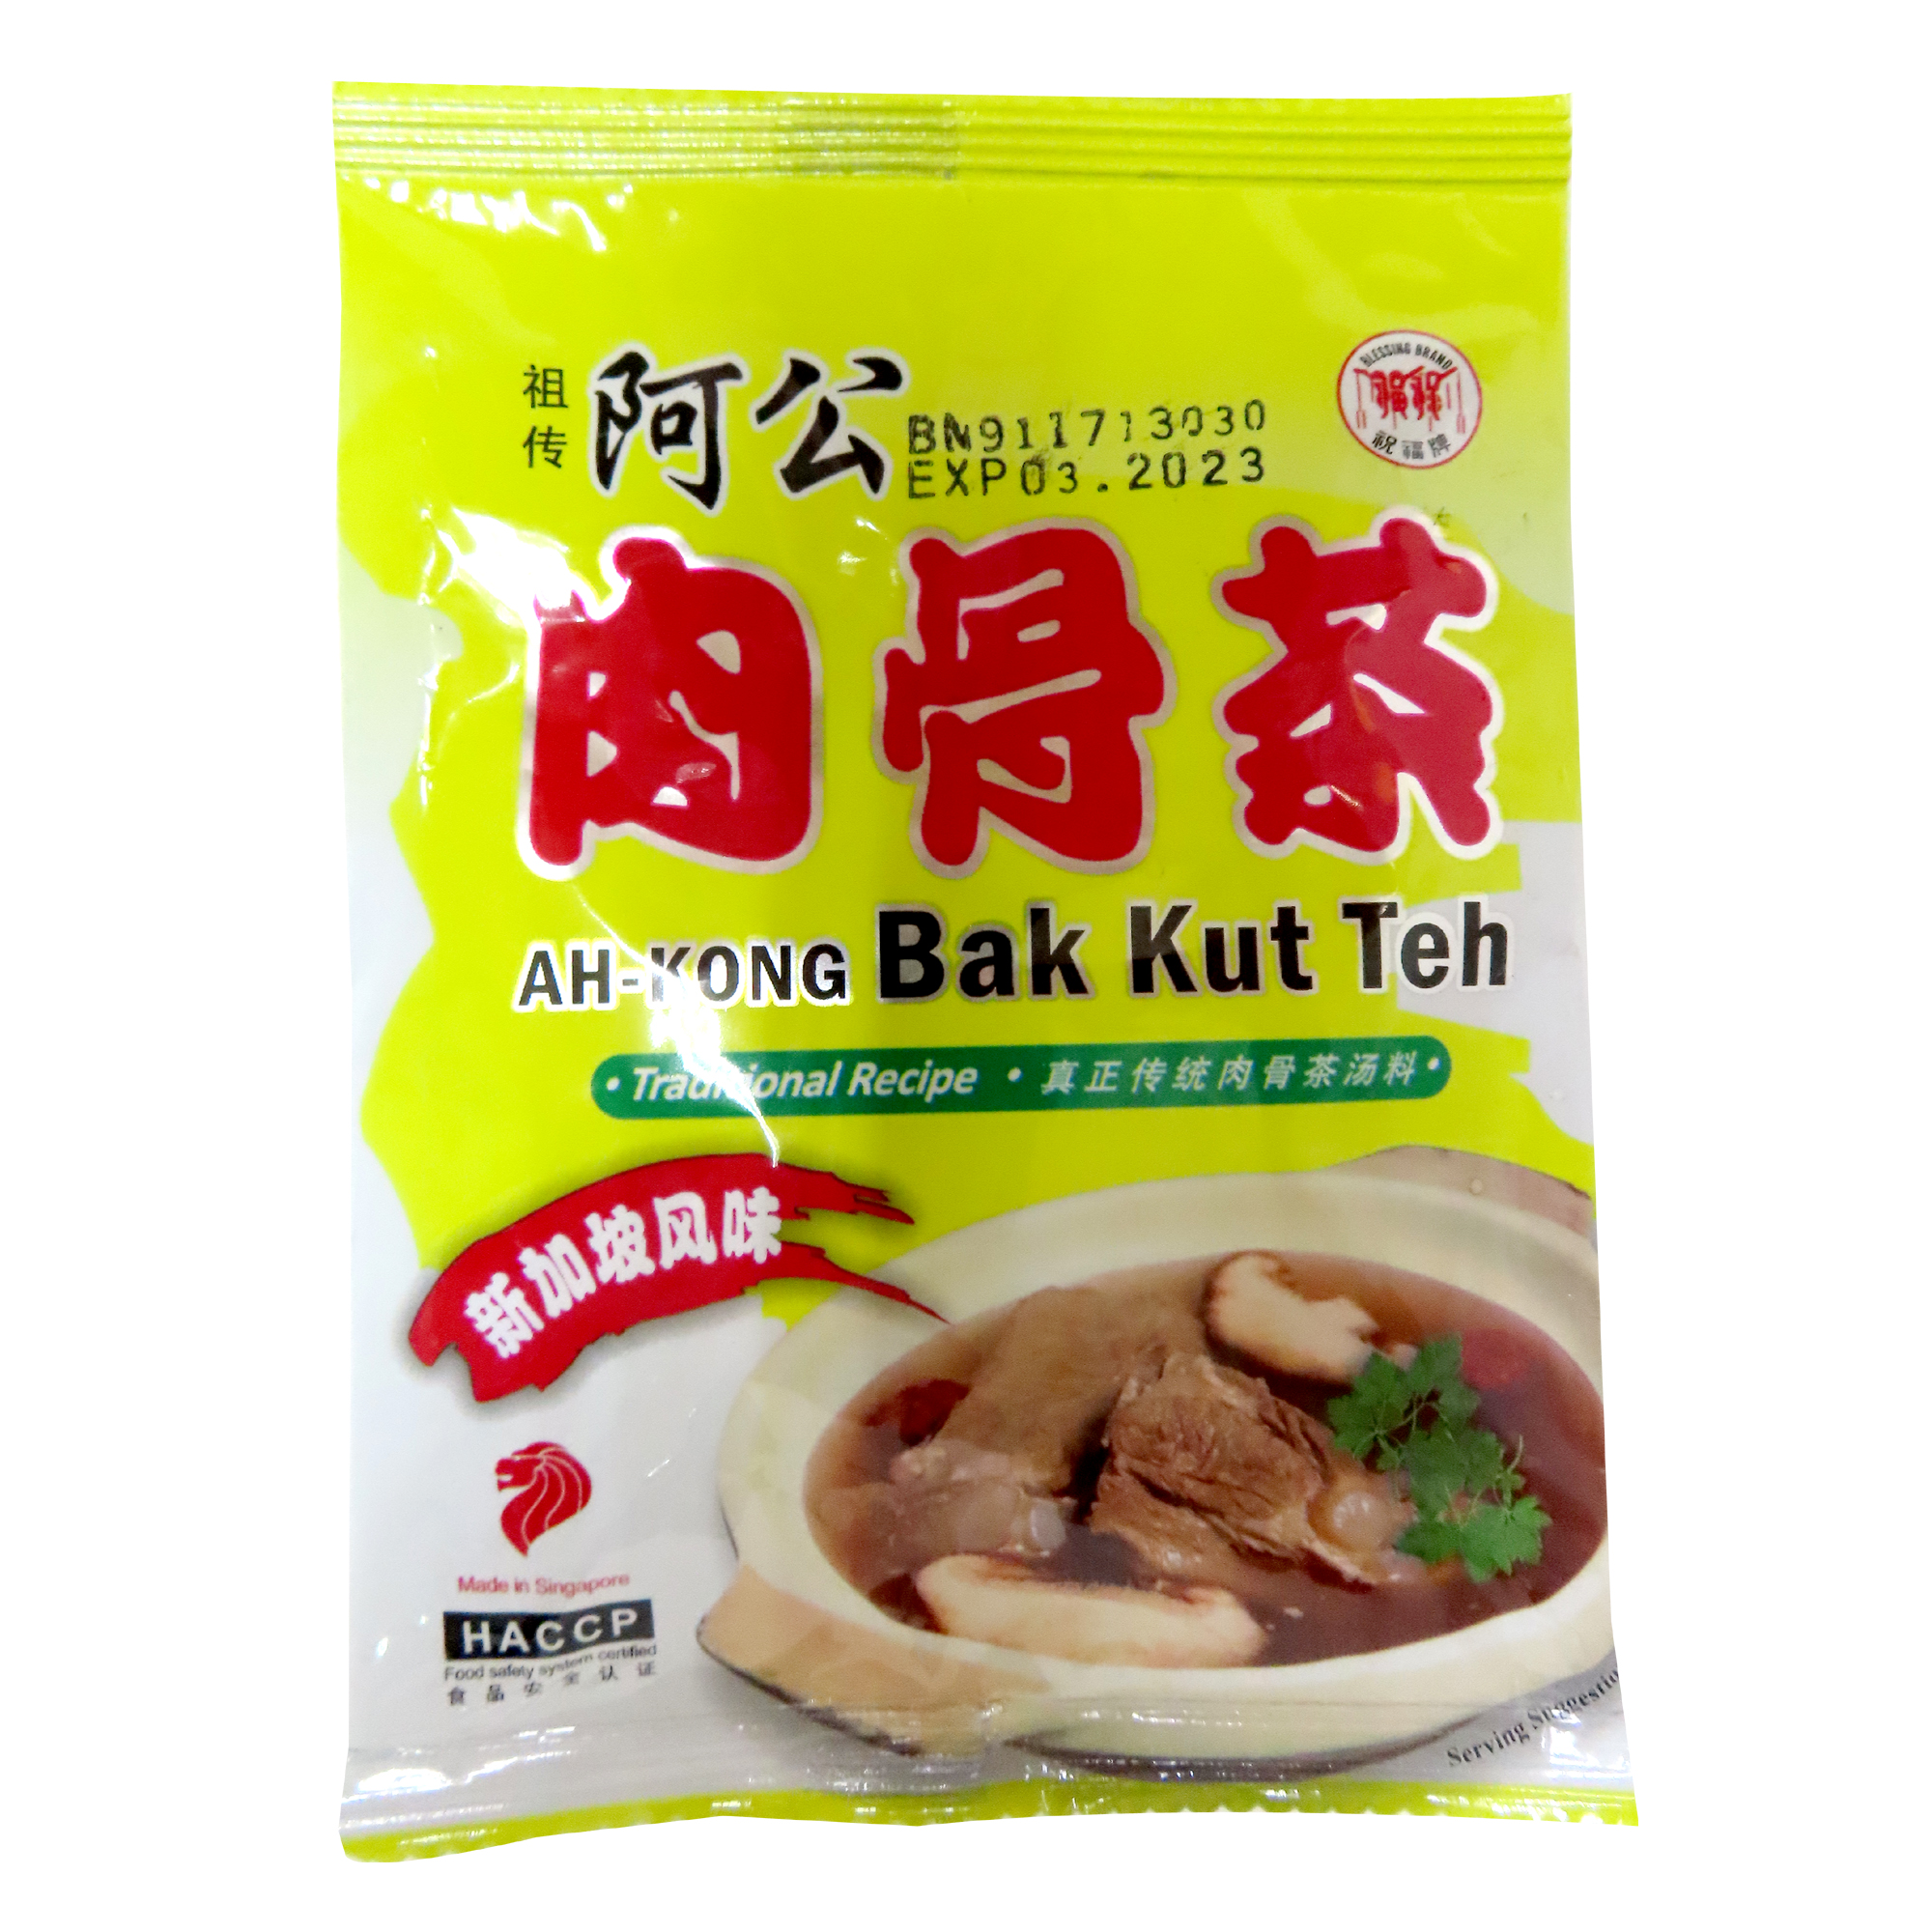 Image herbs Ah-gong Bah Kut Tea 祖传阿公肉骨茶